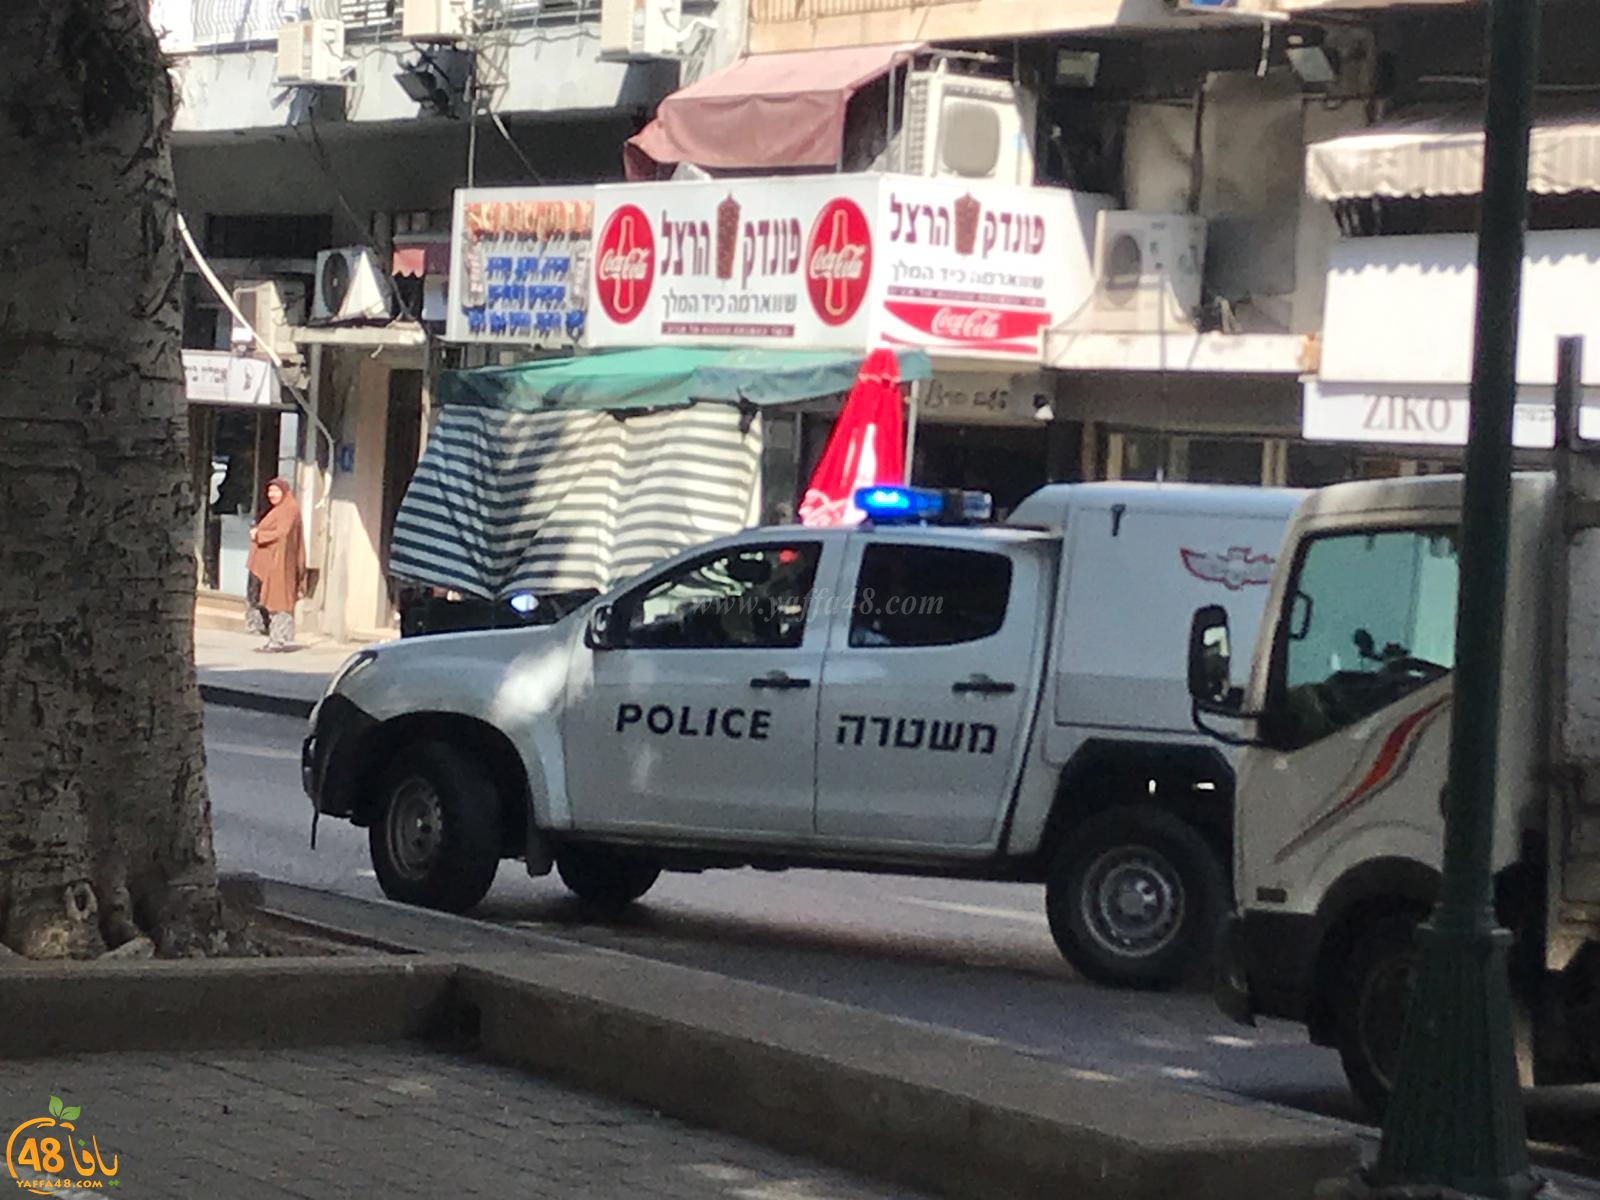  يافا: الشرطة تُغلق شارع شديروت يروشلايم لمعالجة جسم مشبوه 